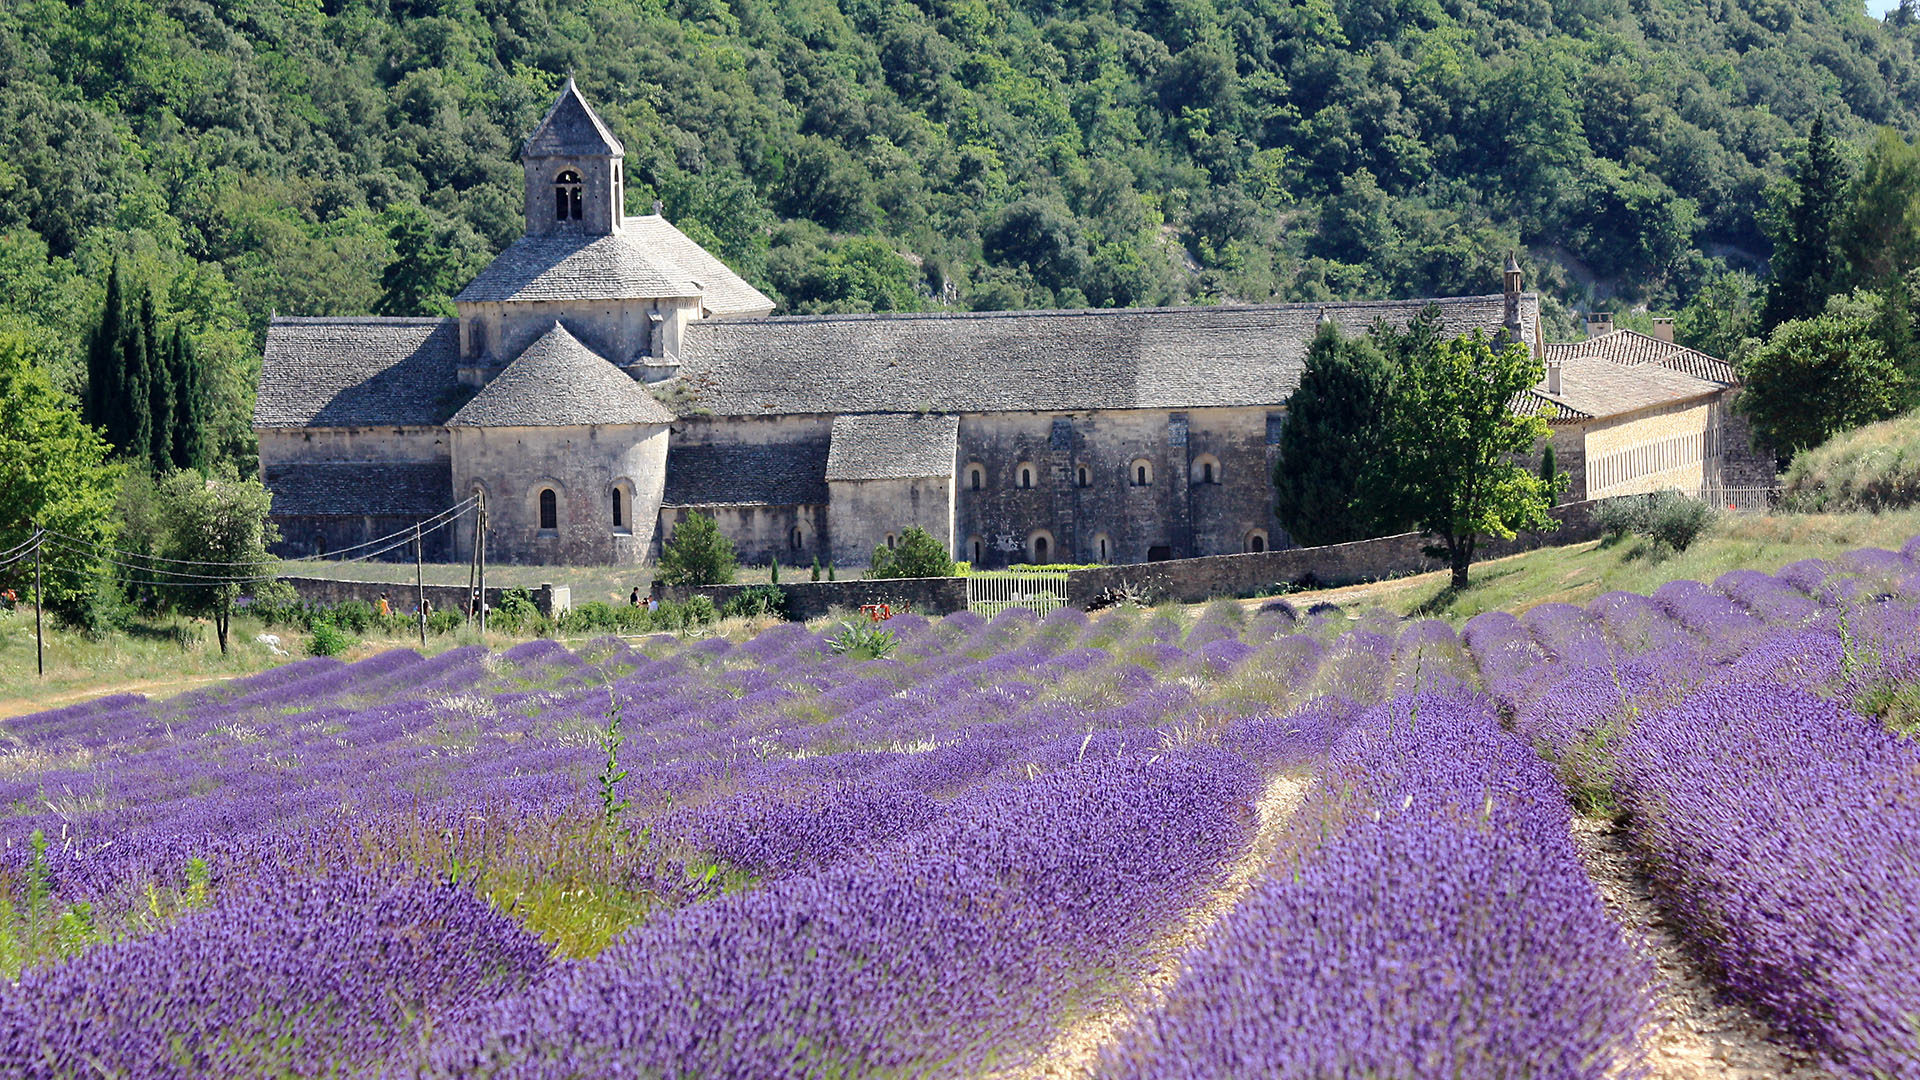 L'abbaye de Sénanque, en Provence, dans le sud de la France. | © Flickr/
Andrea Schaffer
/CC BY 2.0